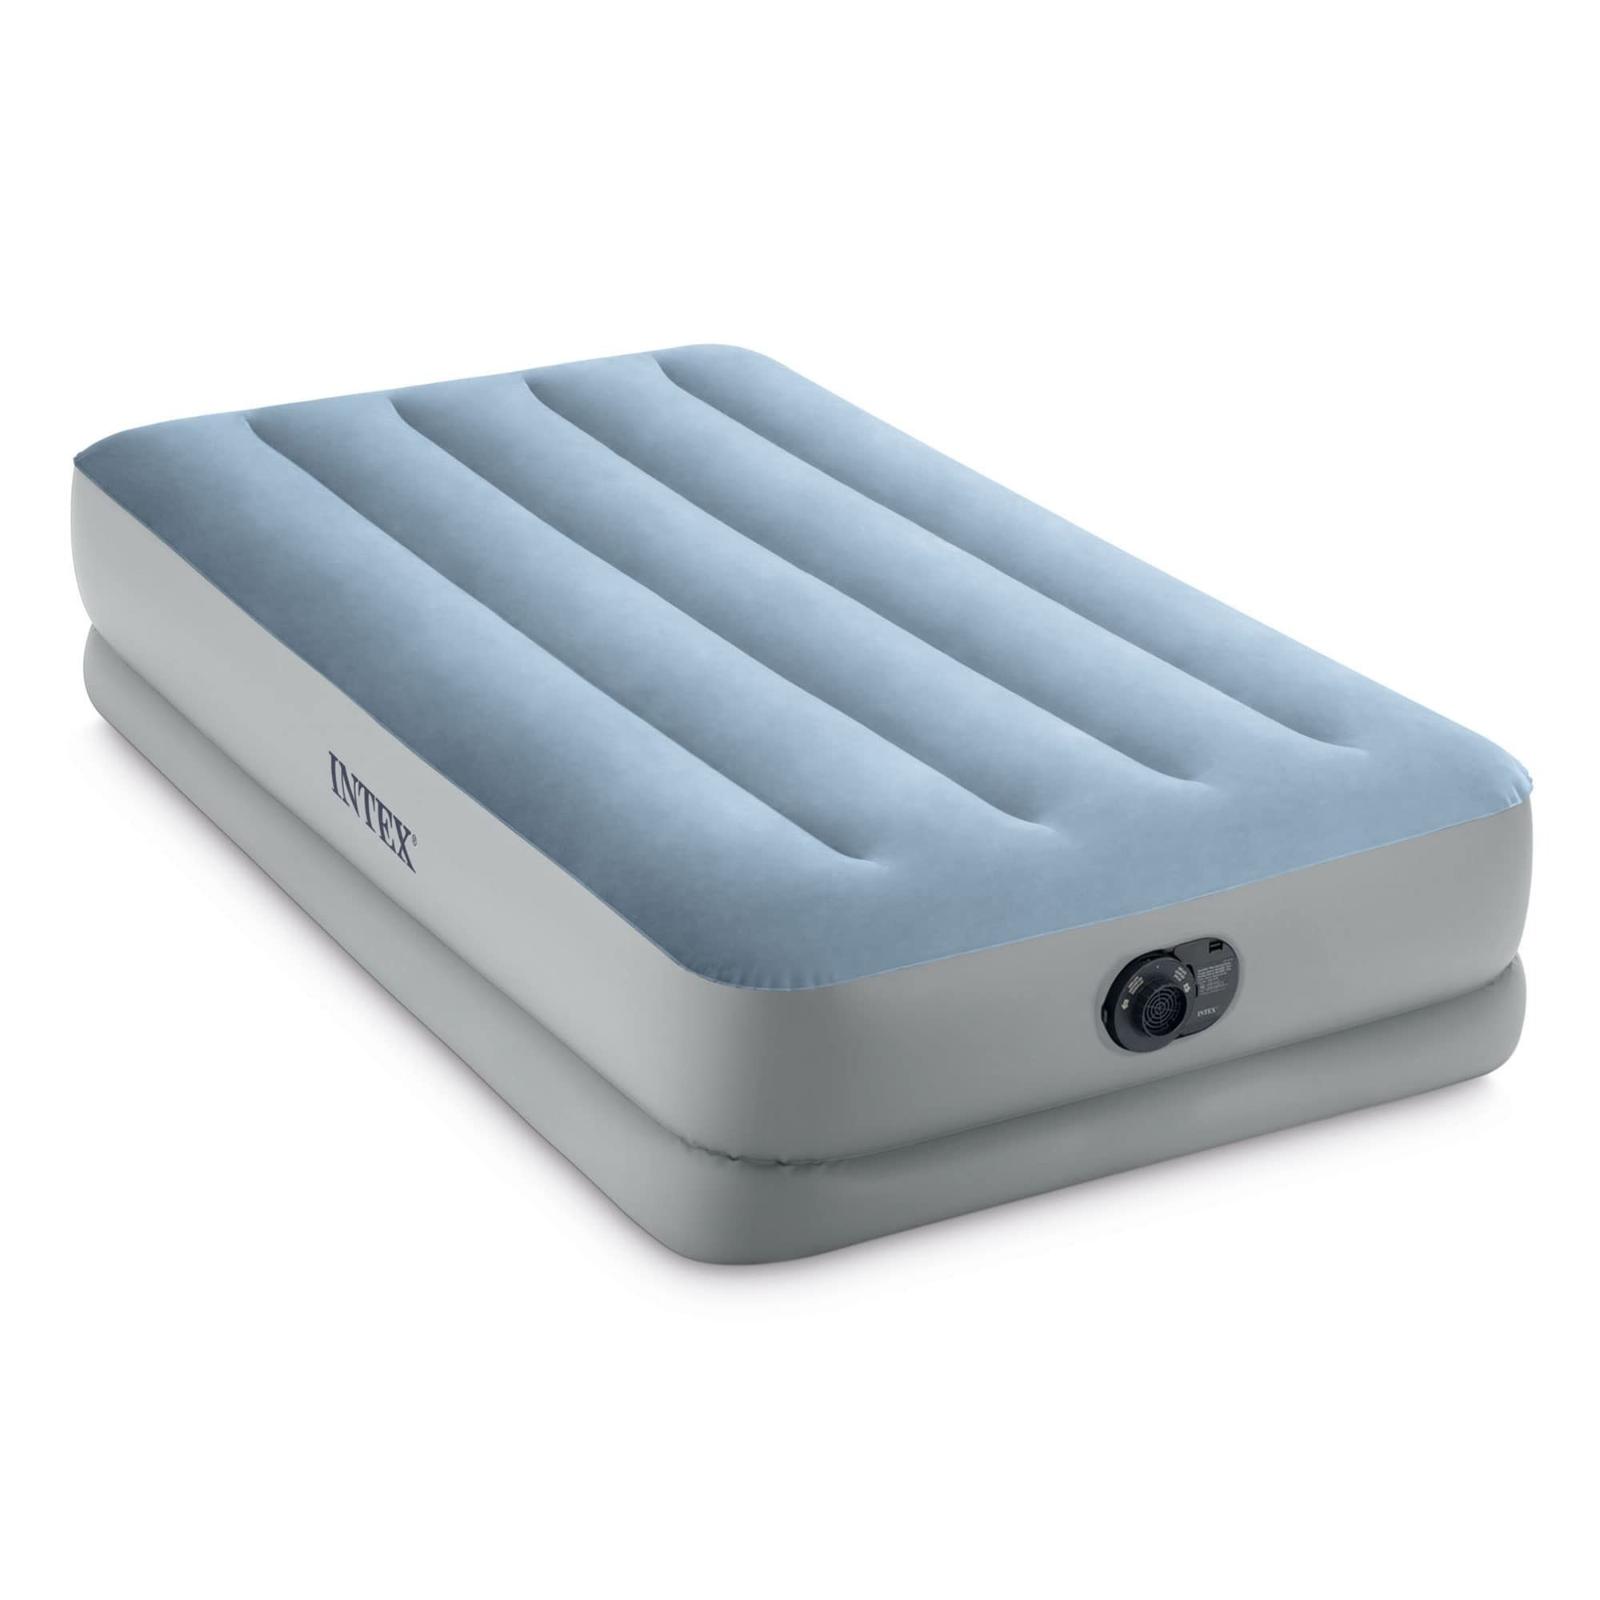 Komfortní plyšová nafukovací matrace Intex Dura Beam Plus Mid-Rise  - Ložnice